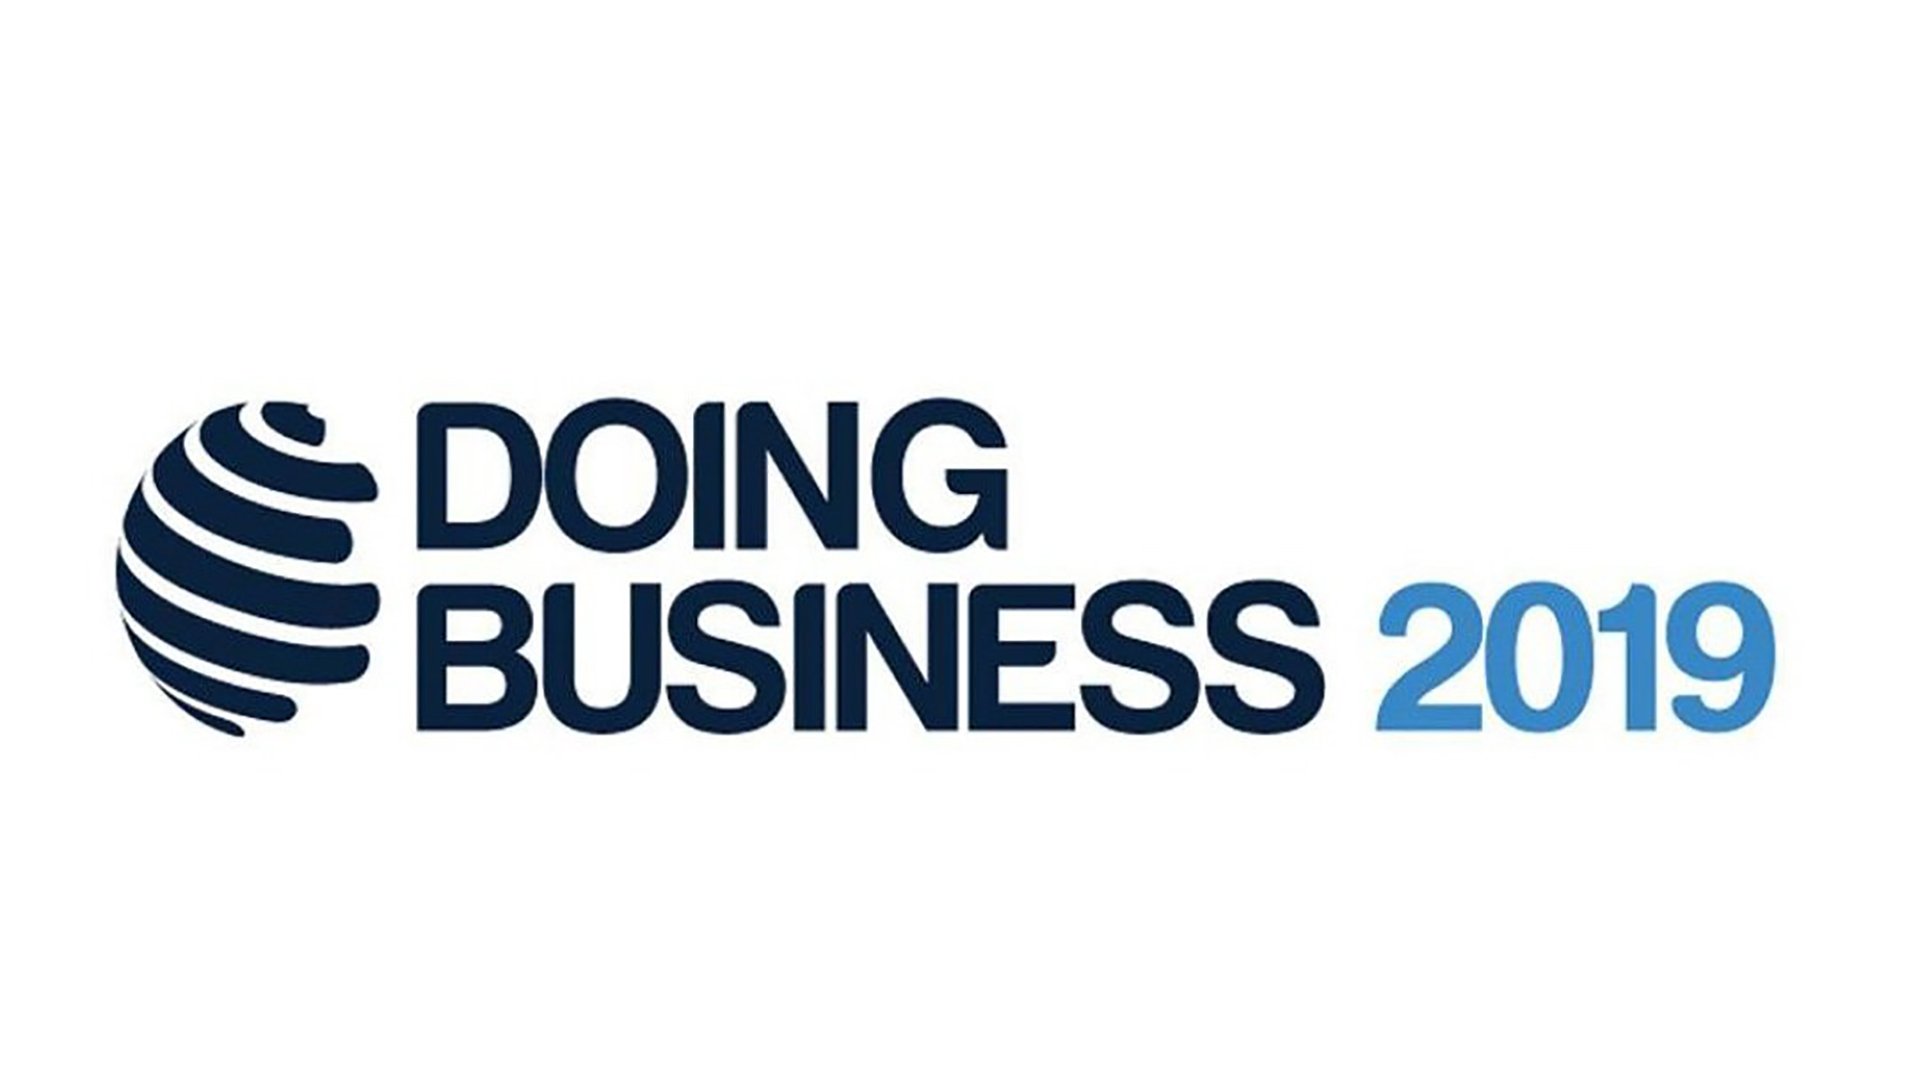 Қазақстан Doing Business рейтингінде 25-орынды иеленді